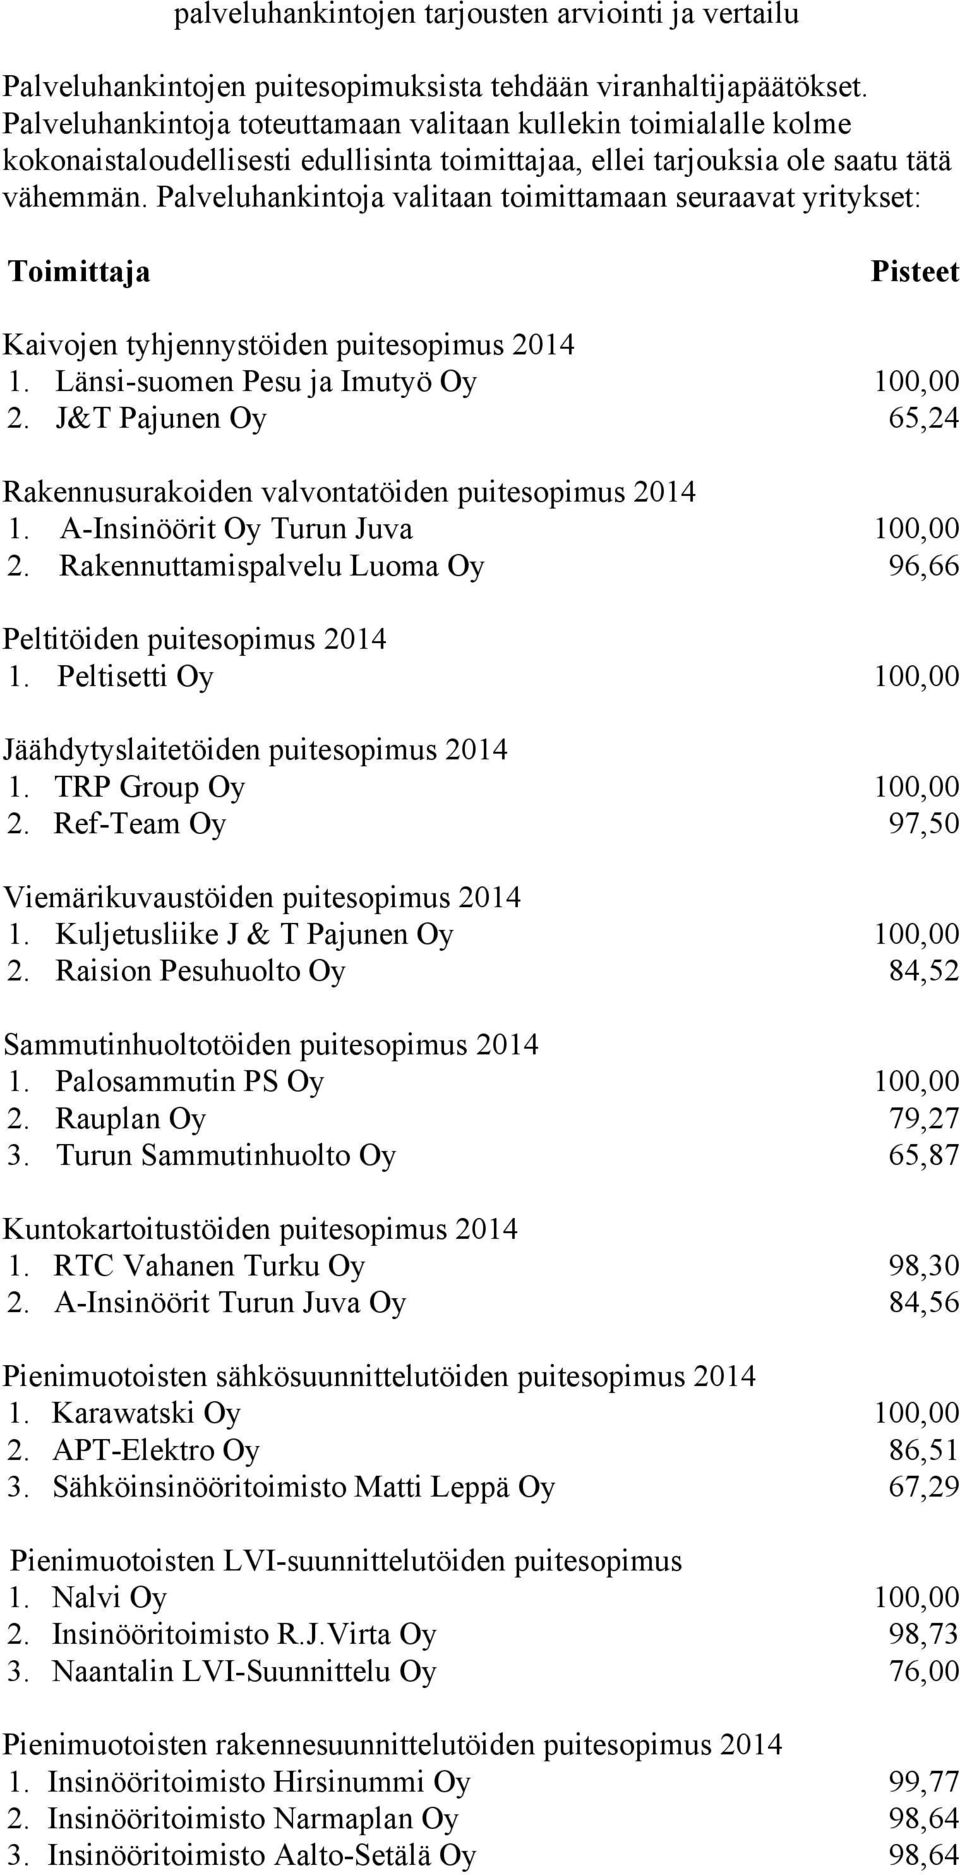 Palveluhankintoja valitaan toimittamaan seuraavat yritykset: Toimittaja Pisteet Kaivojen tyhjennystöiden puitesopimus 2014 1. Länsi-suomen Pesu ja Imutyö Oy 100,00 2.